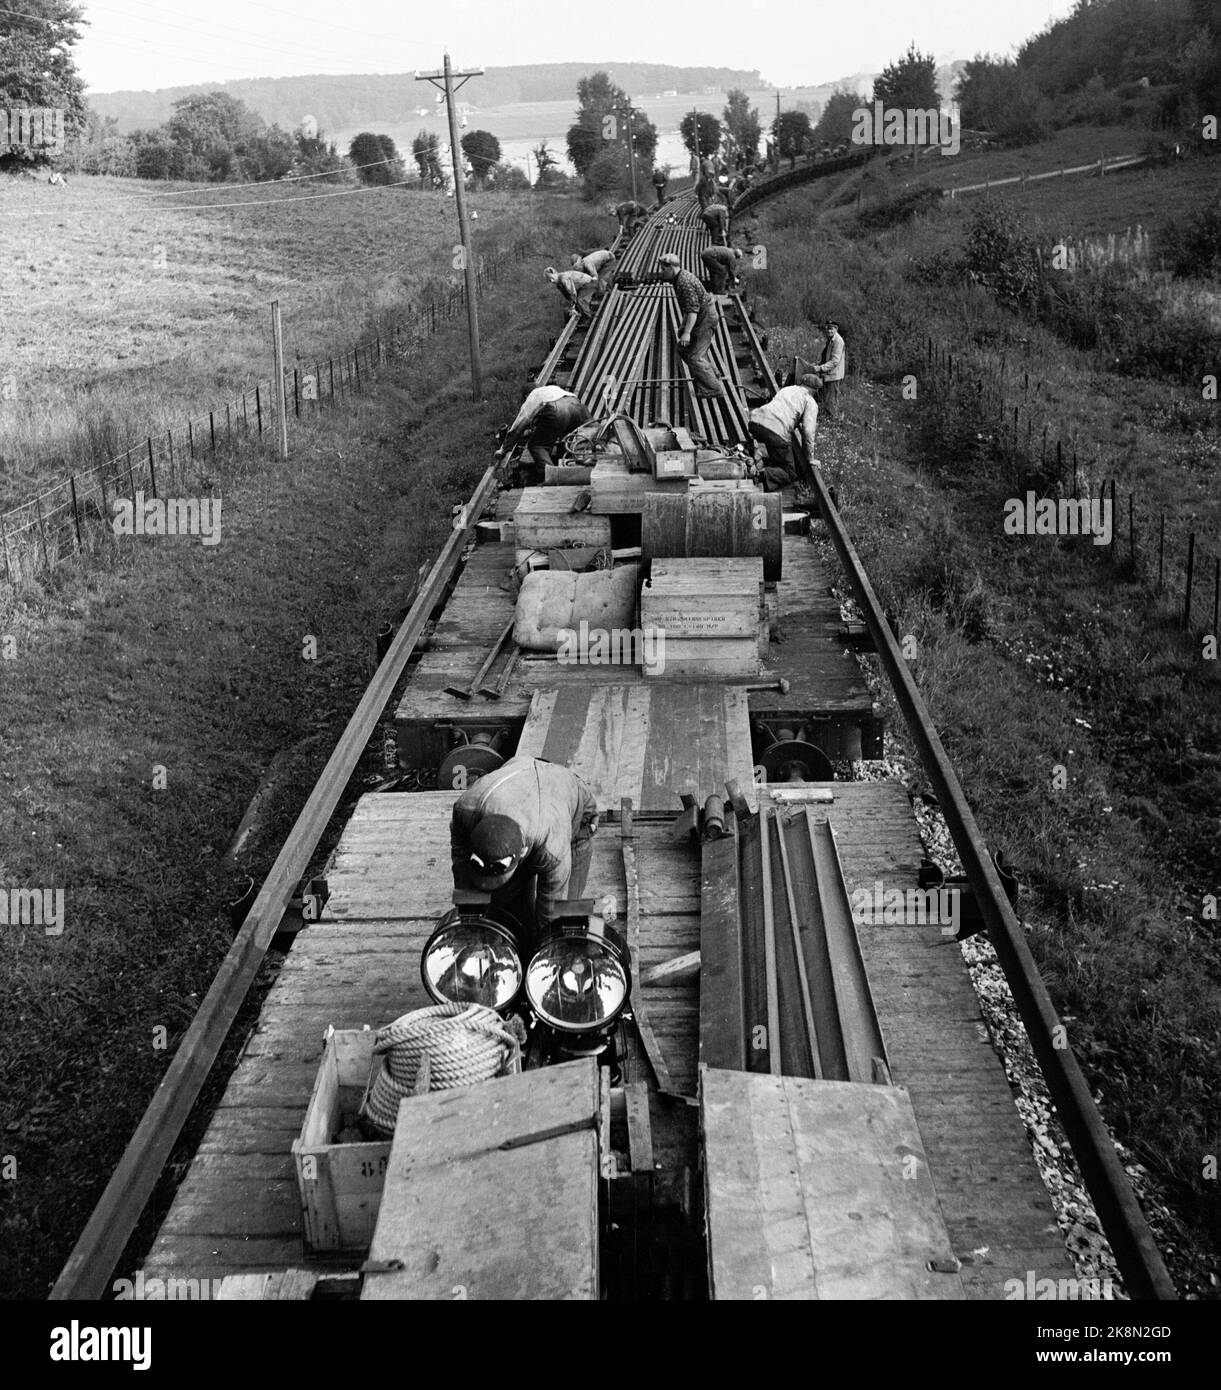 Vestfold September 1949: Die Arbeiten an der Vestfoldbanen-Eisenbahnlinie nähern sich ihrem Ende. Die Arbeiten laufen parallel zu den laufenden Zügen. Hier sind die Bahnarbeiter im Gleiszug dabei, Schienen auszulegen. Die Schienen wurden neun und neun zusammengehakt und vom Wagen gezogen, während der Eisenbahnzug vorwärts fuhr. Foto: Sverre A. Børretzen / Aktuell / NTB Stockfoto